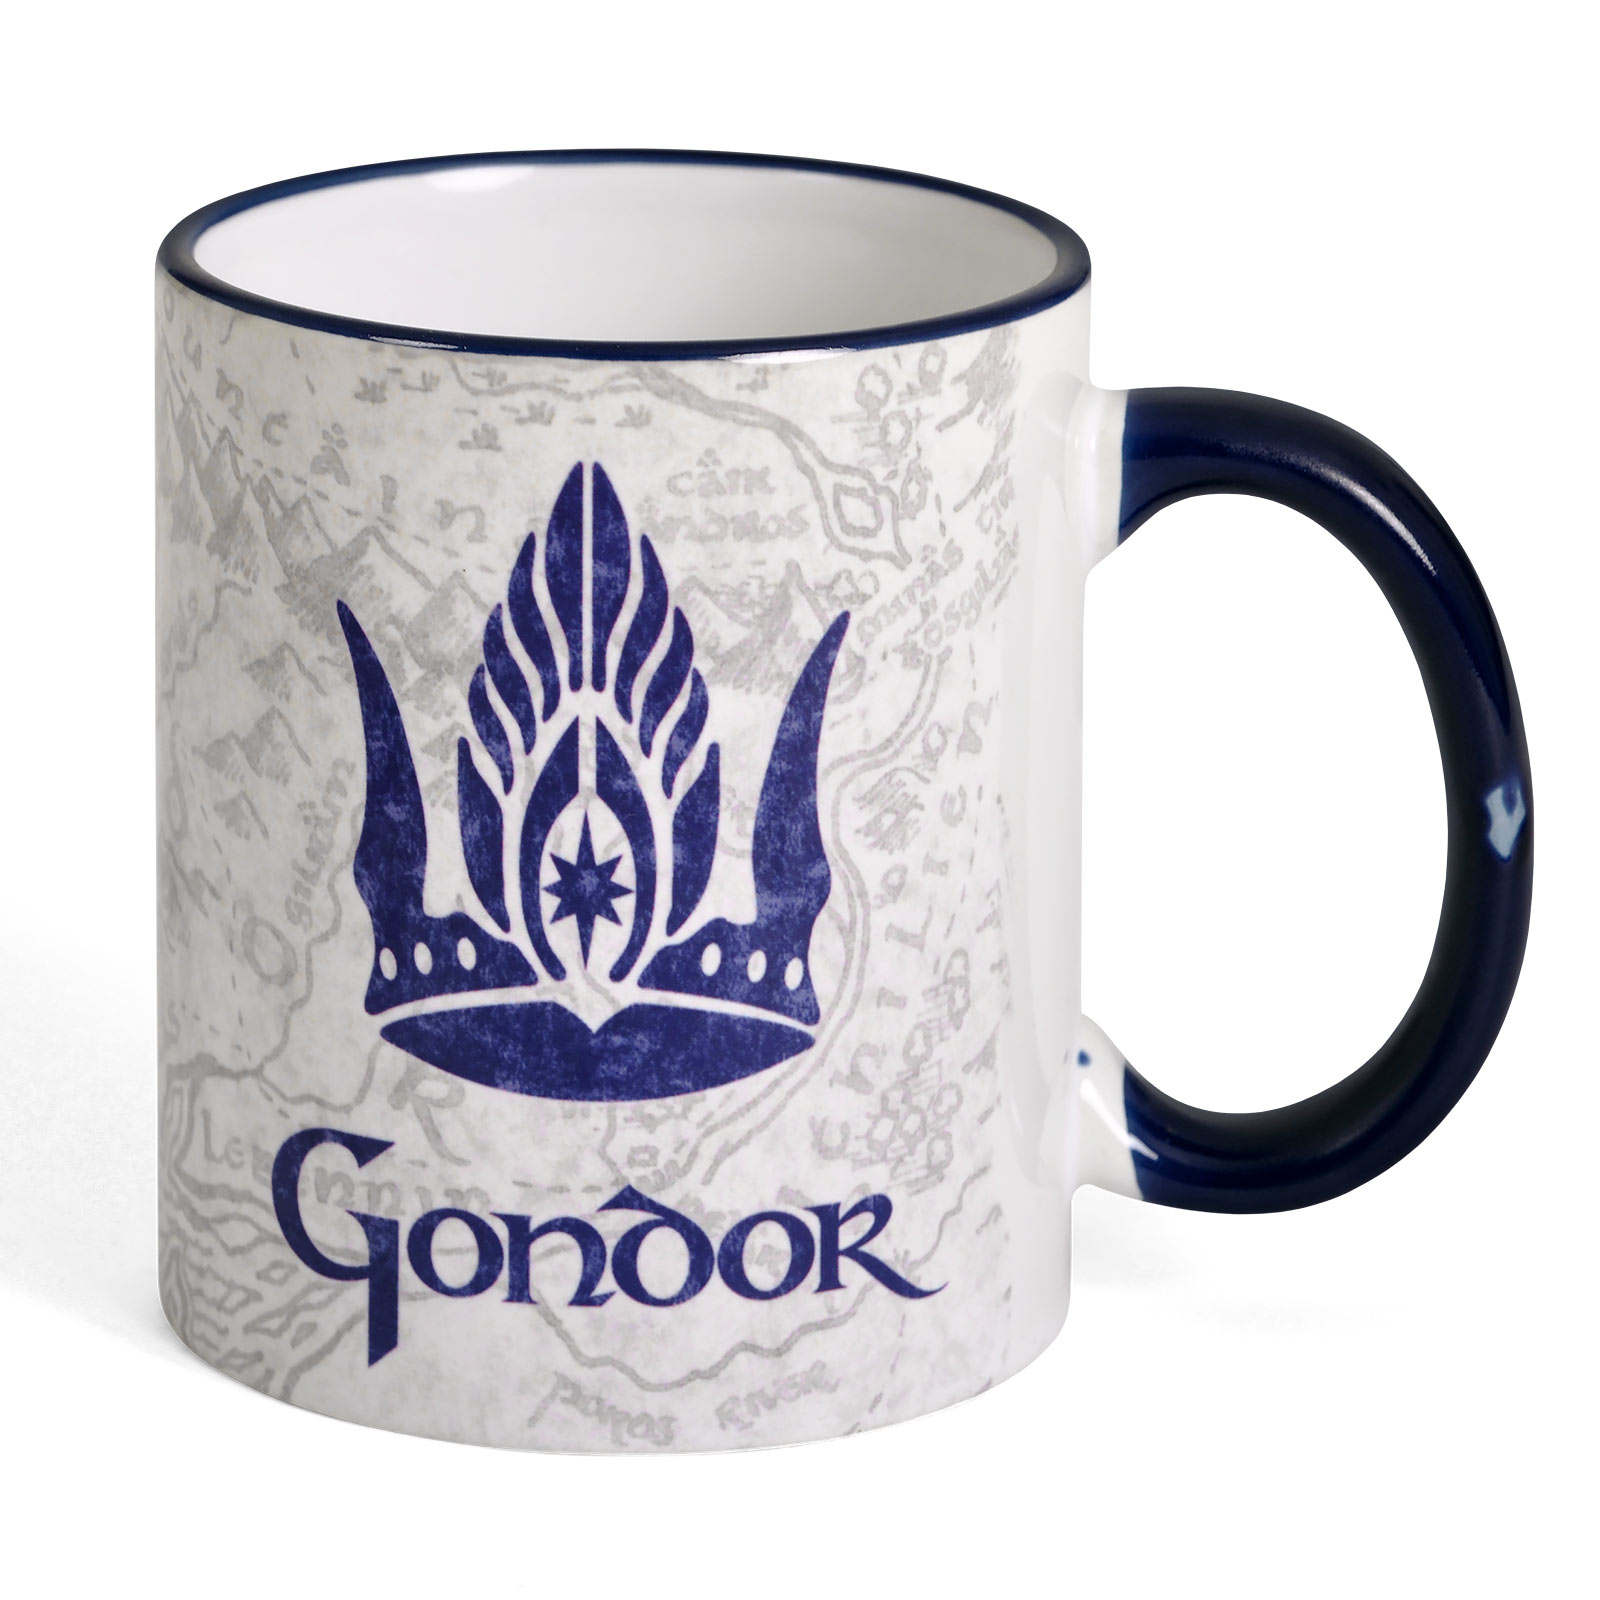 Herr der Ringe - Gondor Tasse